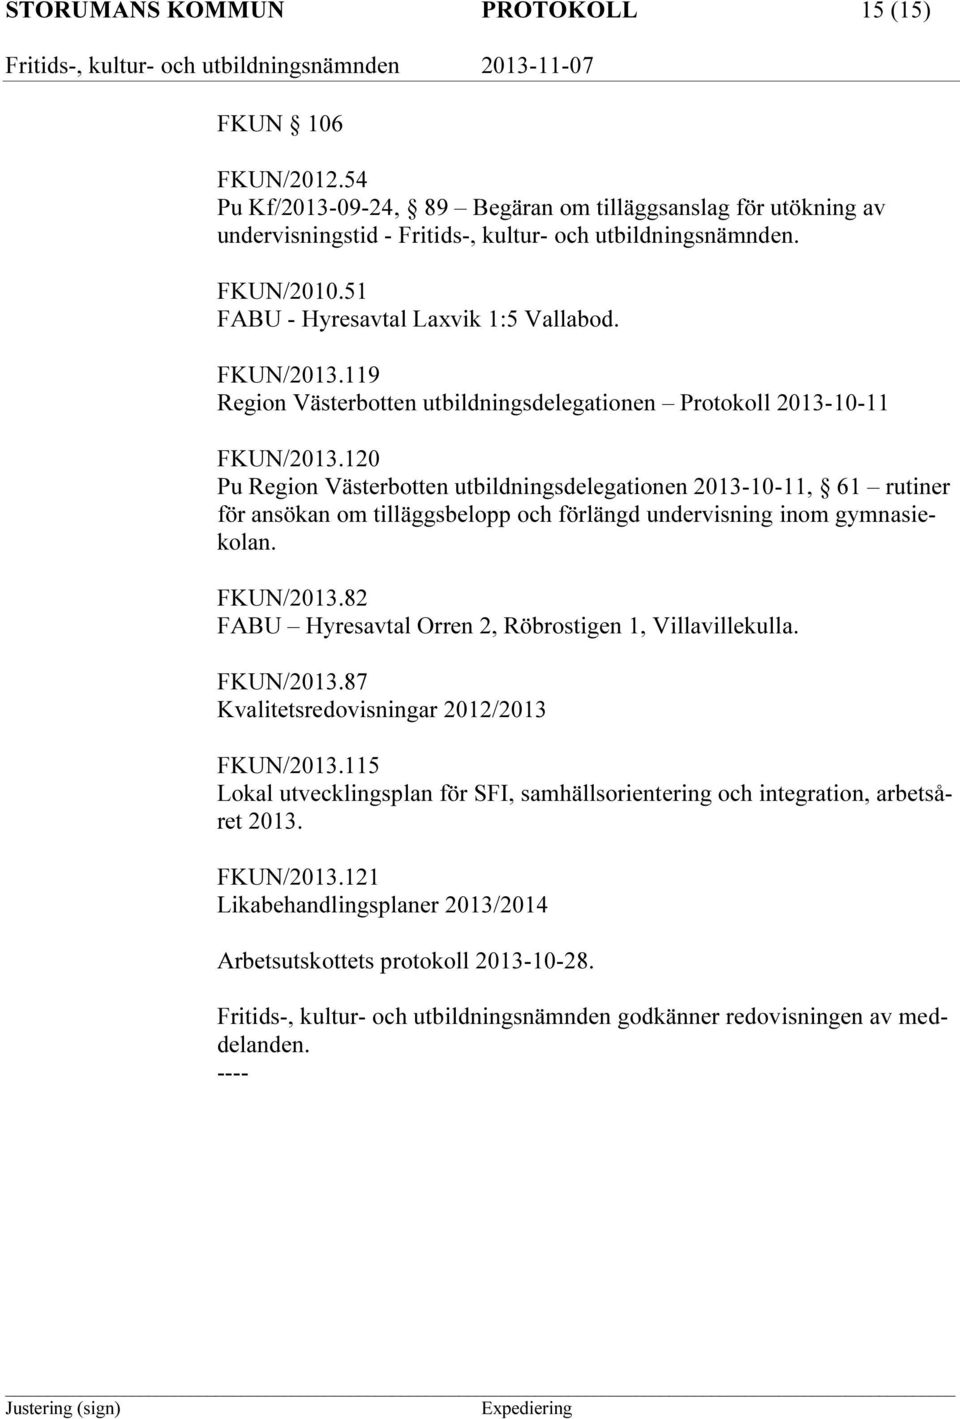 120 Pu Region Västerbotten utbildningsdelegationen 2013-10-11, 61 rutiner för ansökan om tilläggsbelopp och förlängd undervisning inom gymnasiekolan. FKUN/2013.